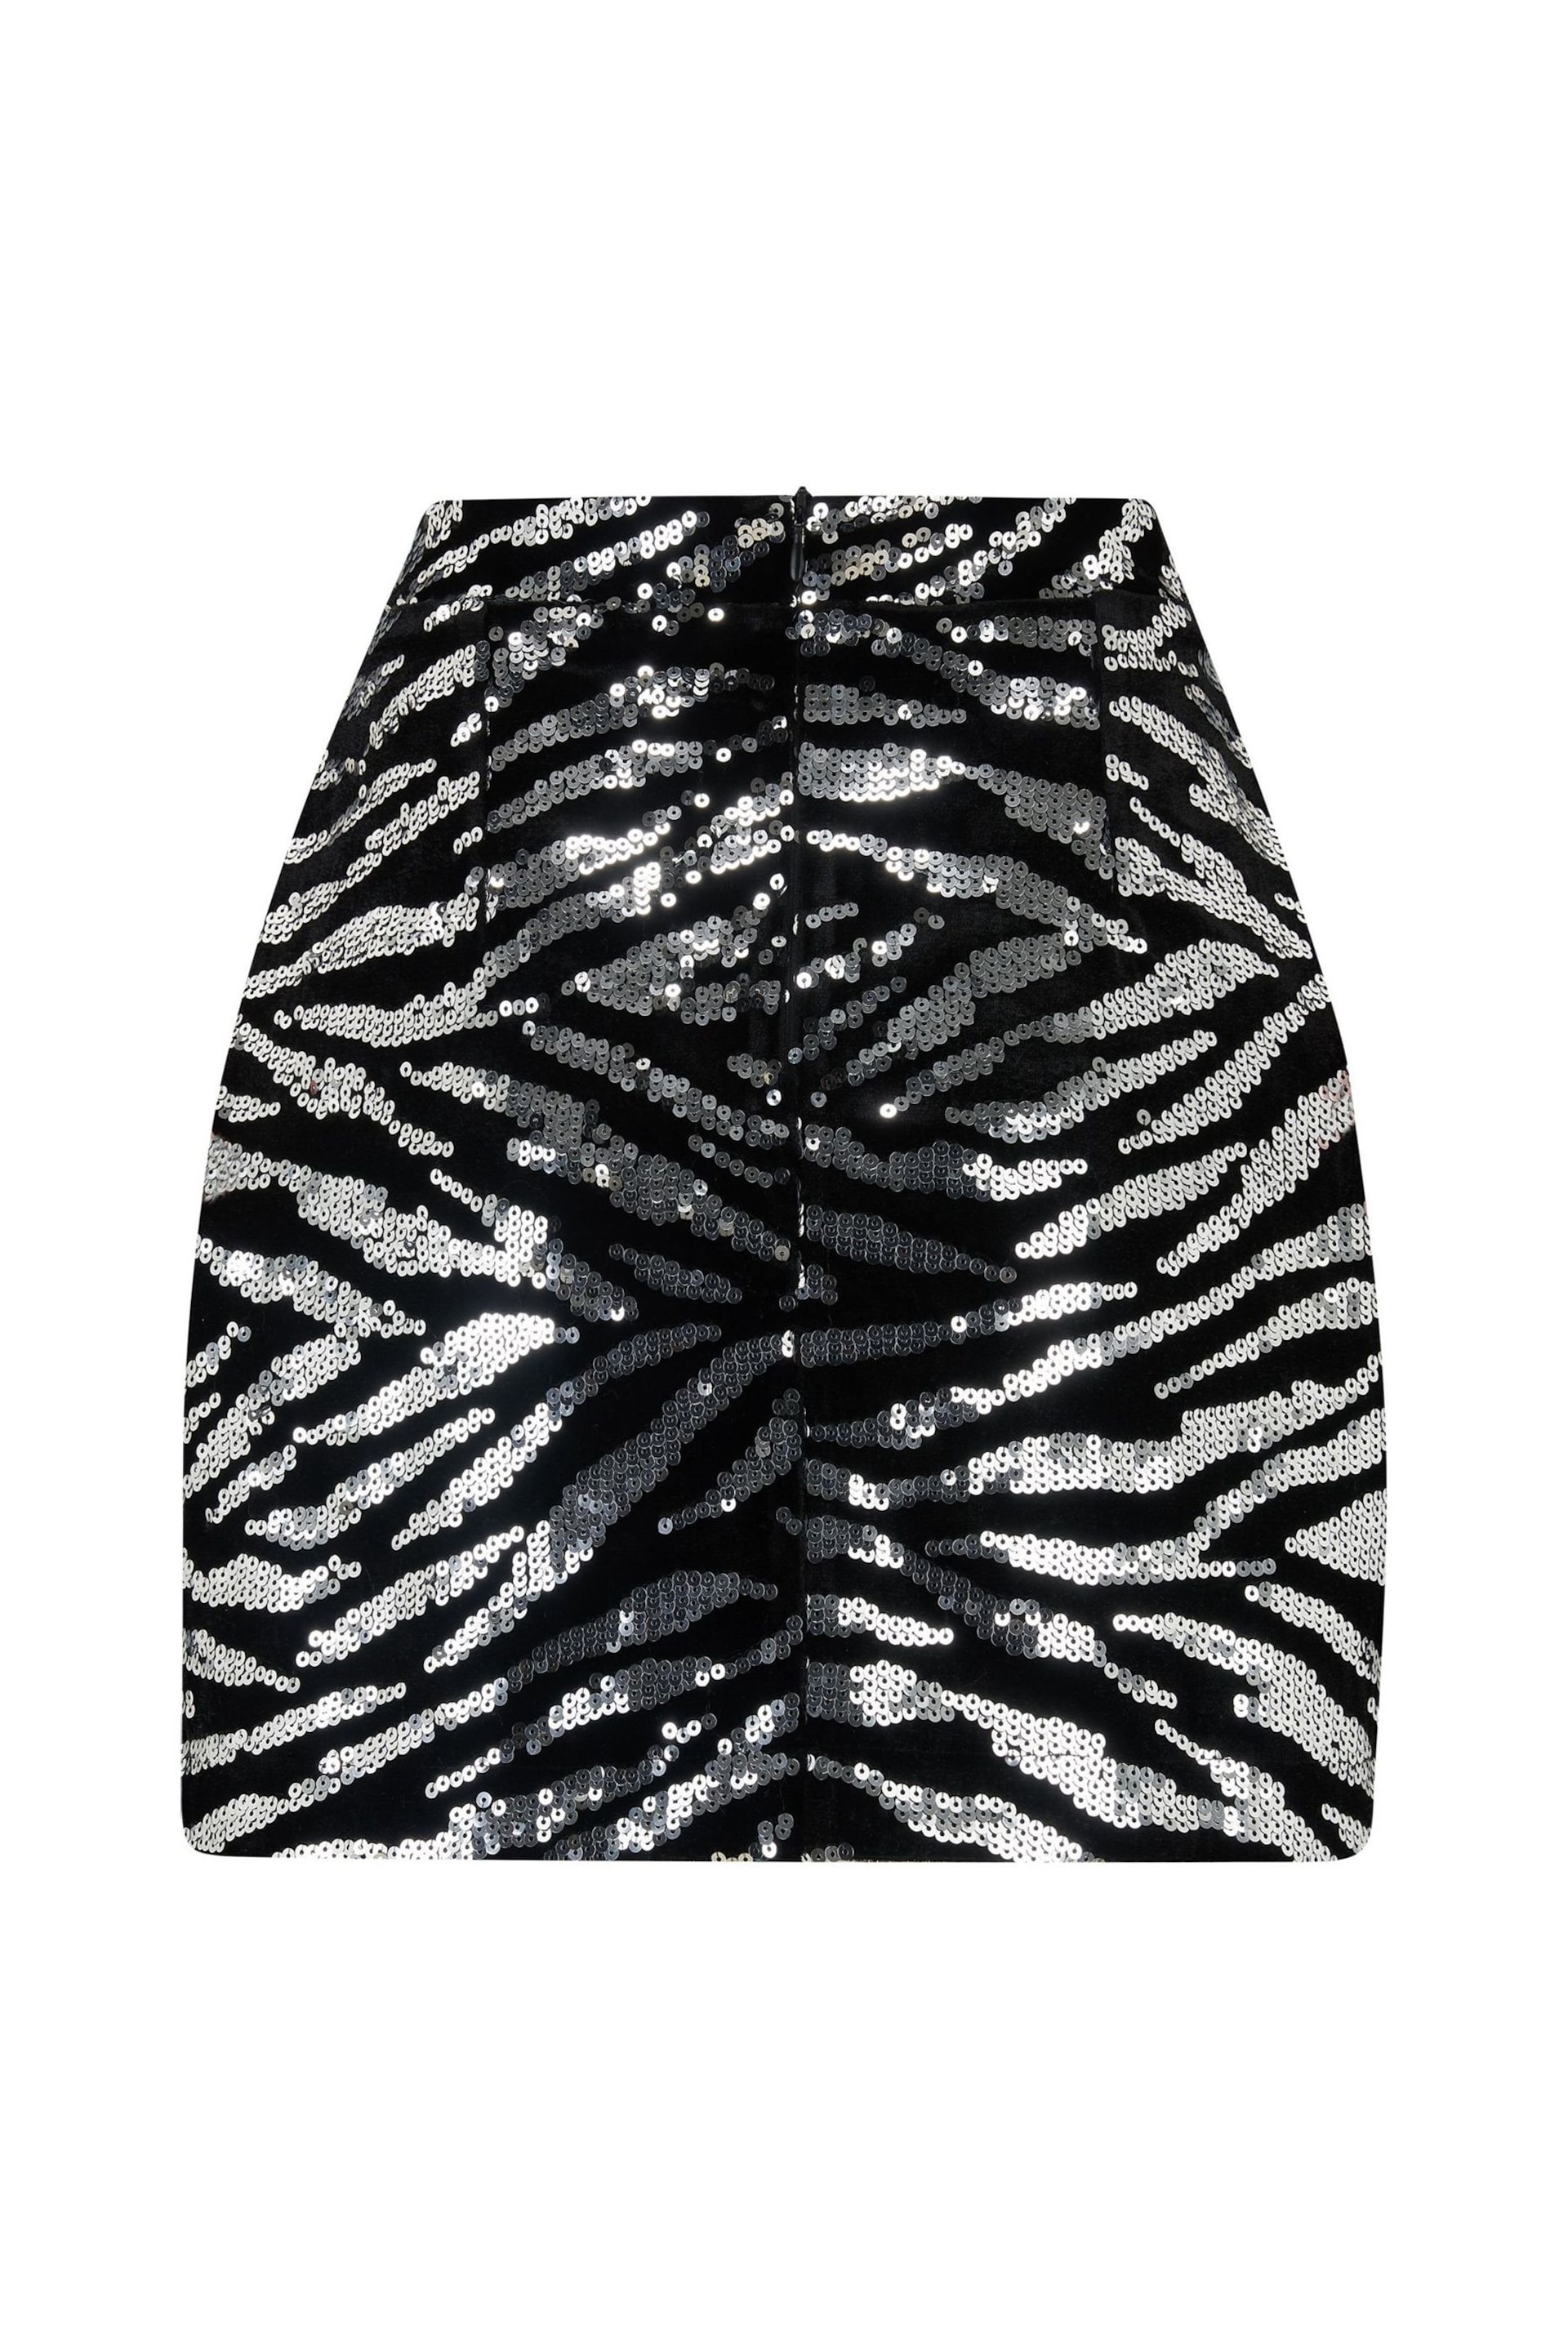 Pour Moi Black Zebra Selena Velvet Sequin Mini Skirt - Image 4 of 4